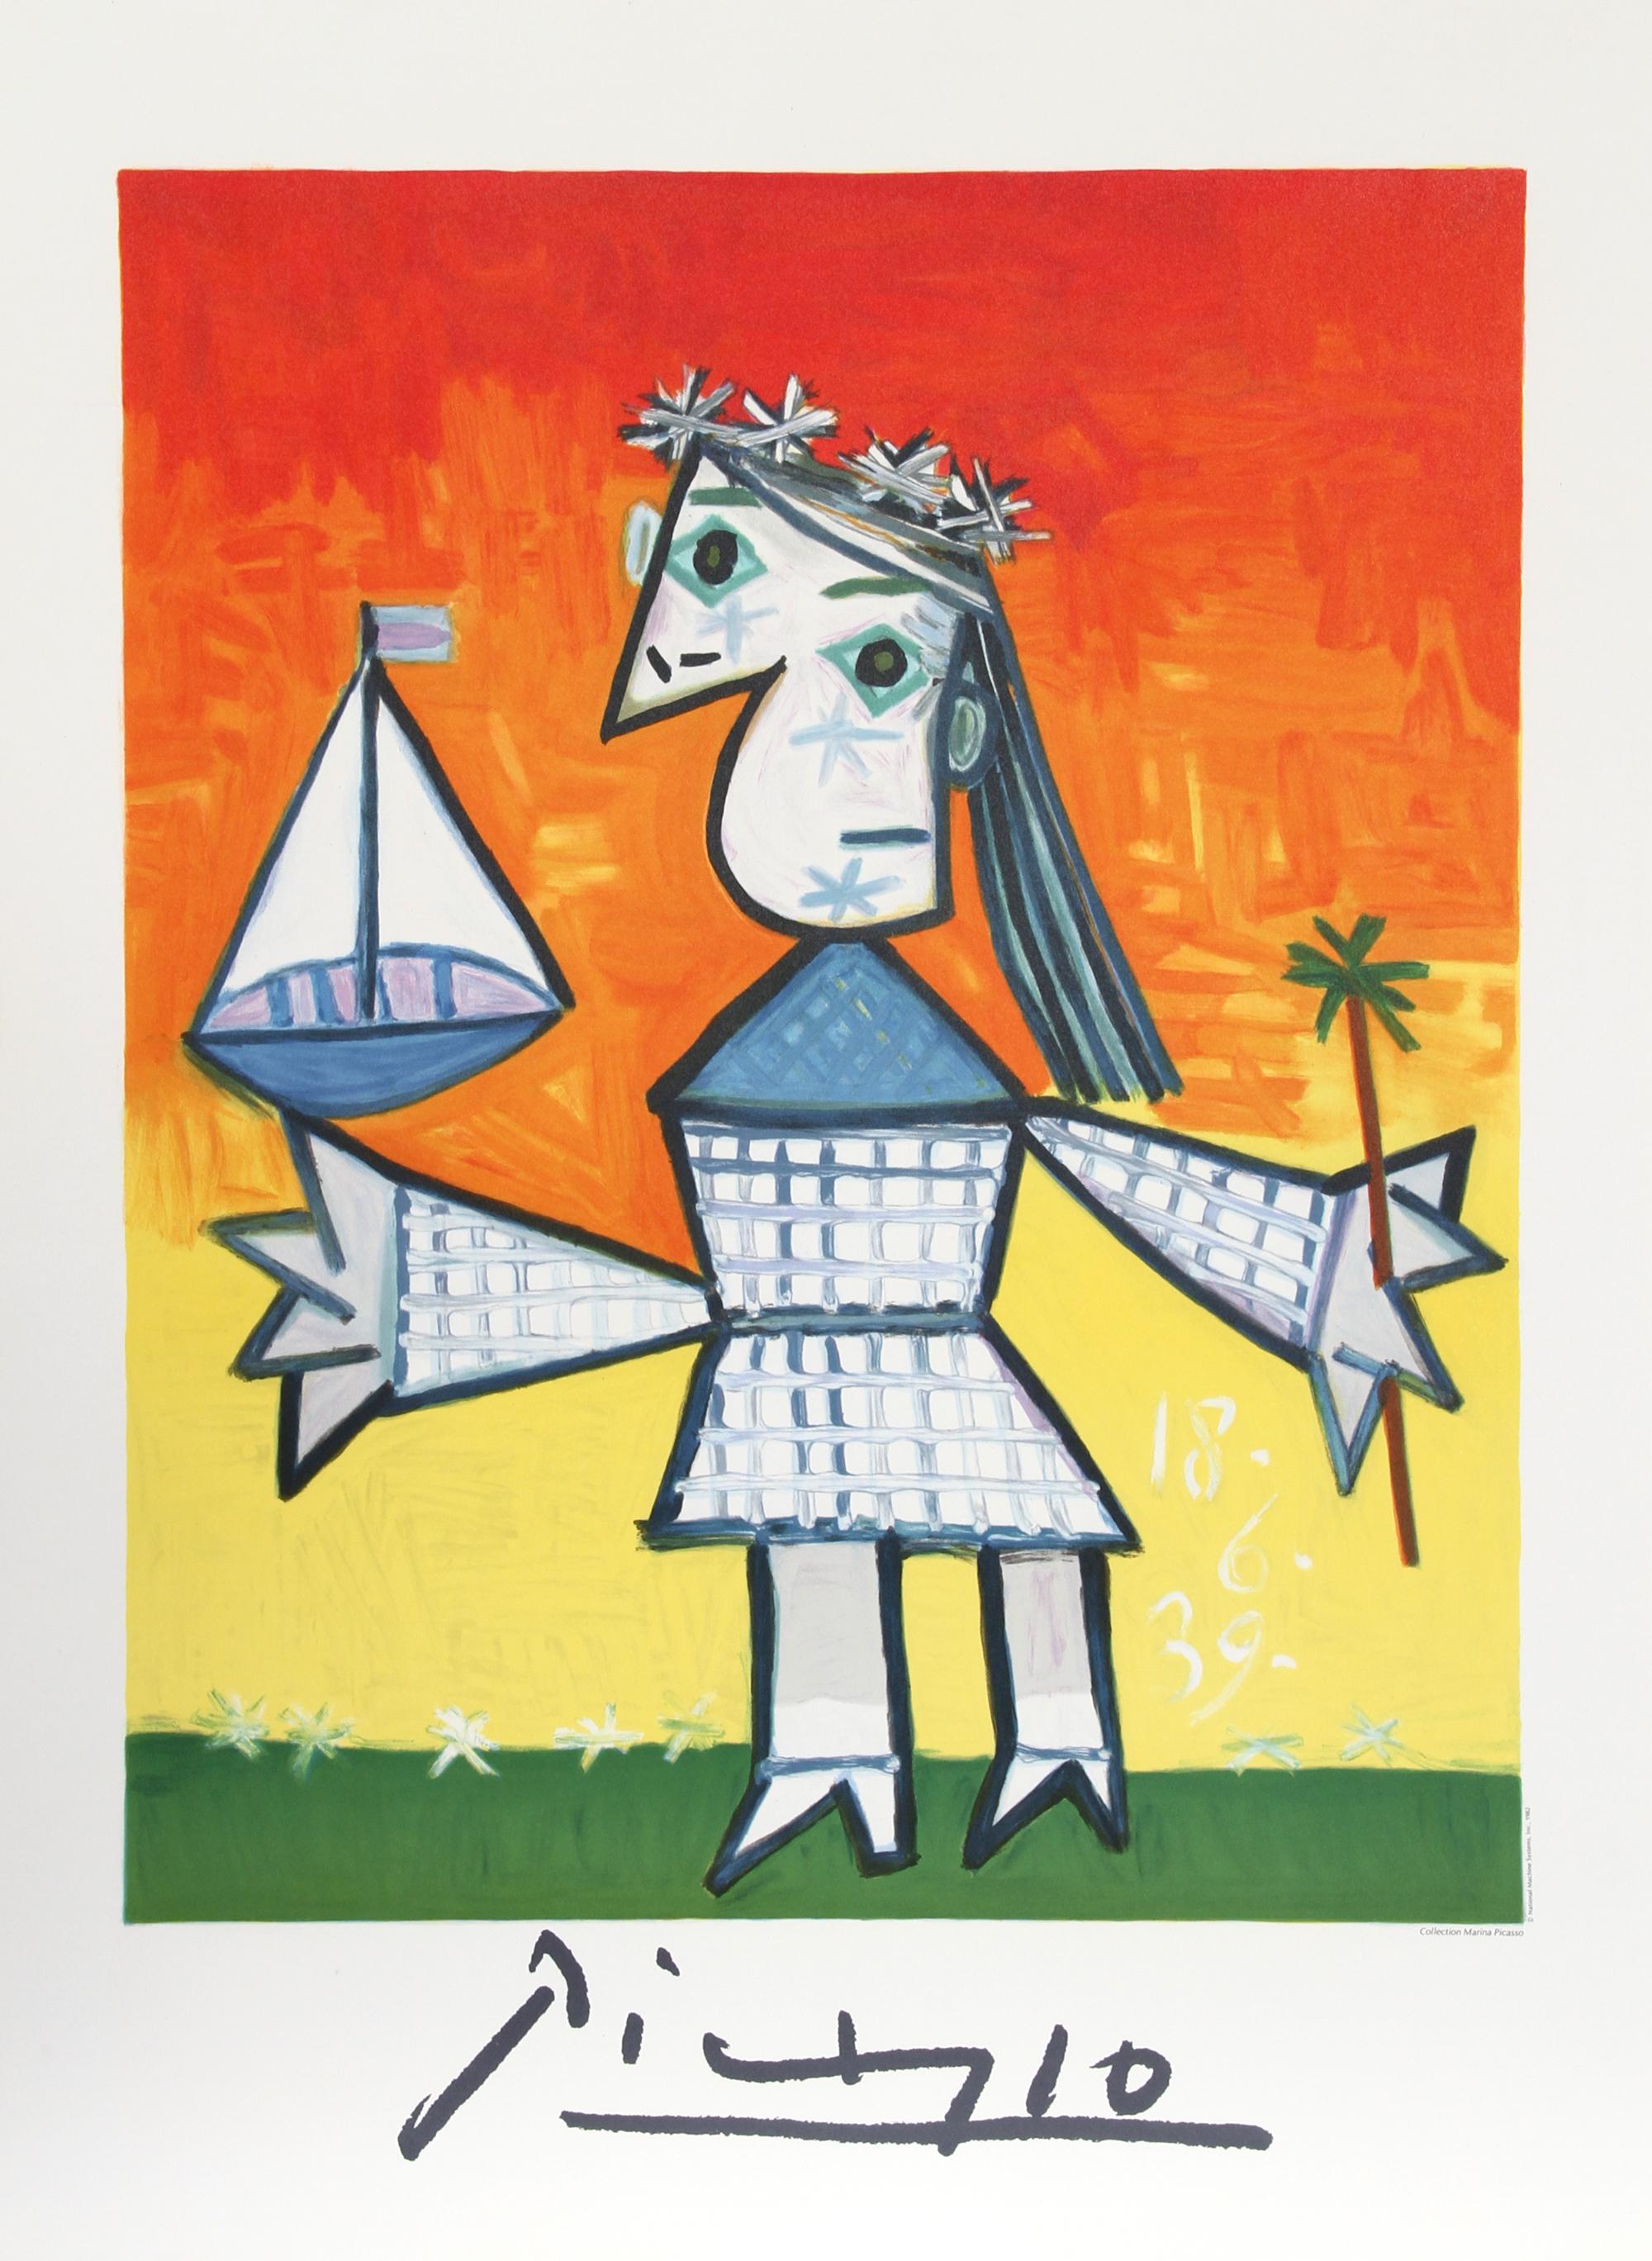 Affiche lithographique originale en édition limitée d'après le célèbre tableau de Pablo Picasso "Fillette Couronnée au Bateau". La peinture à l'huile a été achevée en 1939. Dans les années 1970, après la mort de Picasso, Marina Picasso, sa